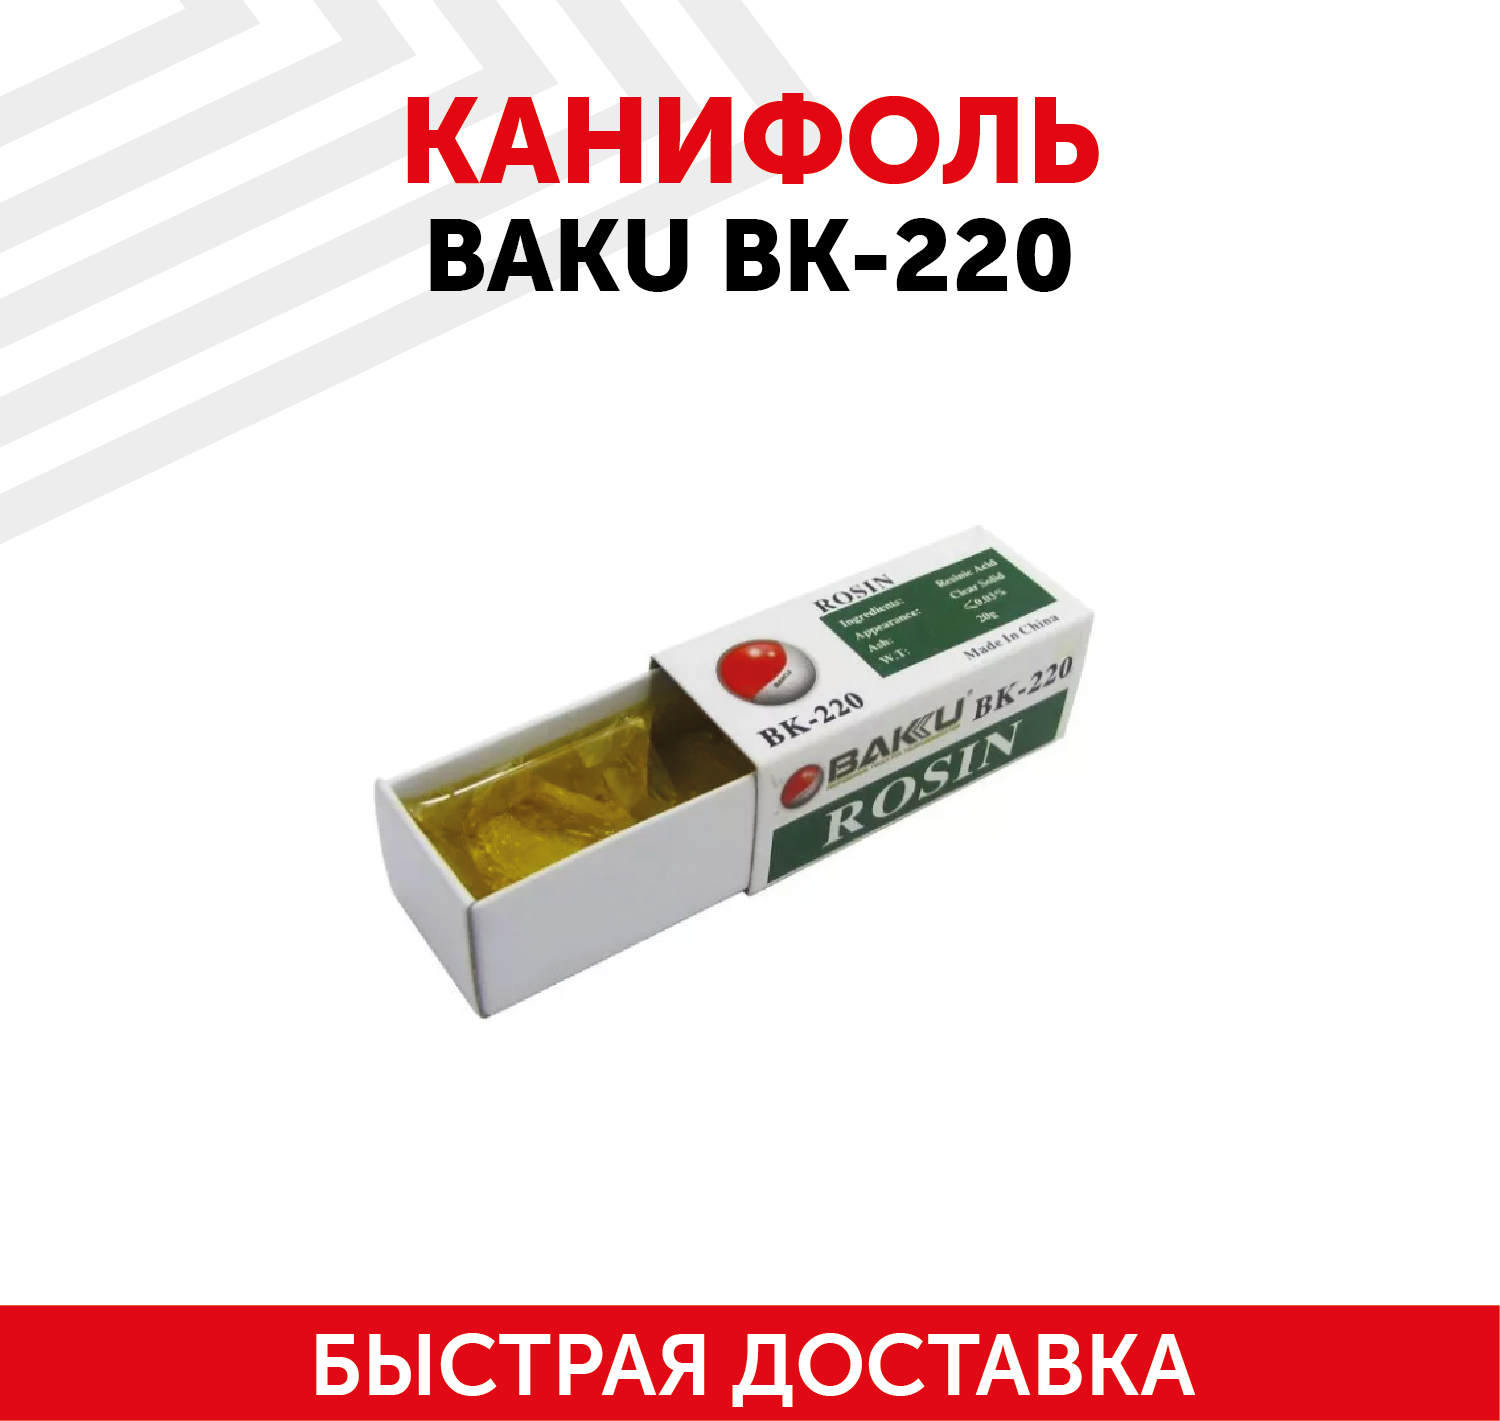 Канифоль BAKU BK-220 (20г.)